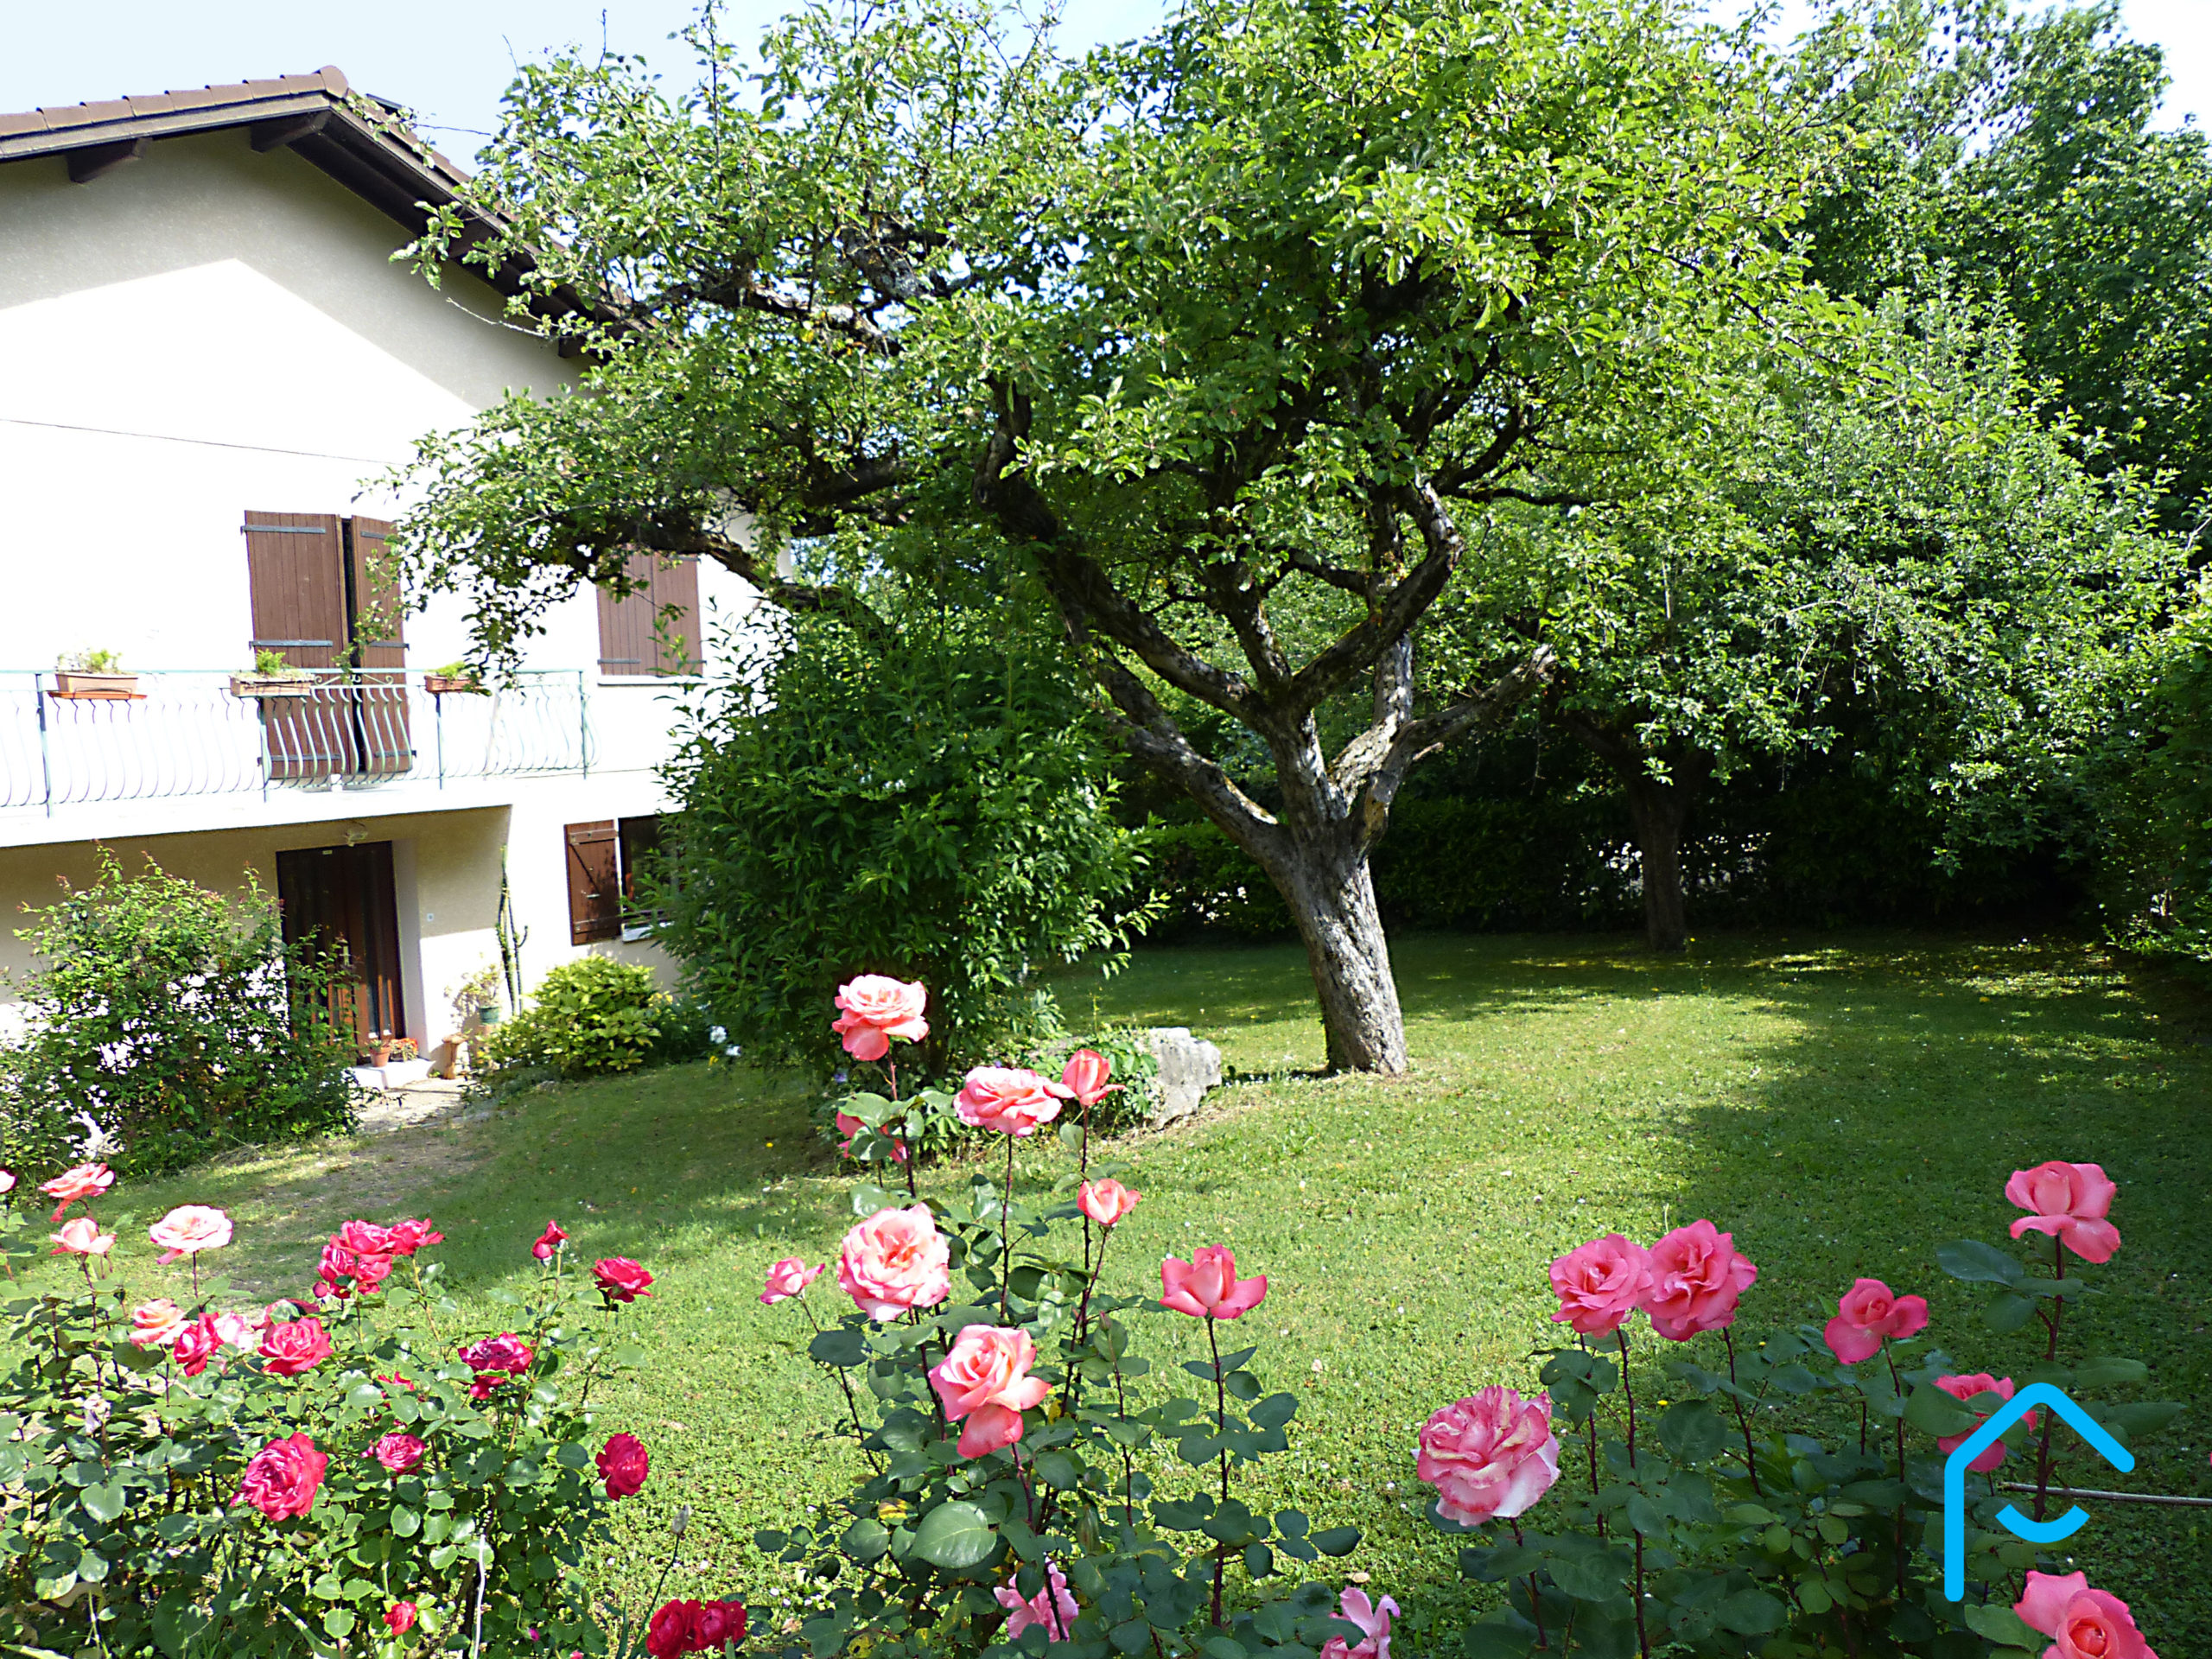 A vendre maison individuelle Jacob Bellecombette Savoie Chambéry terrain piscine jardin vue 9